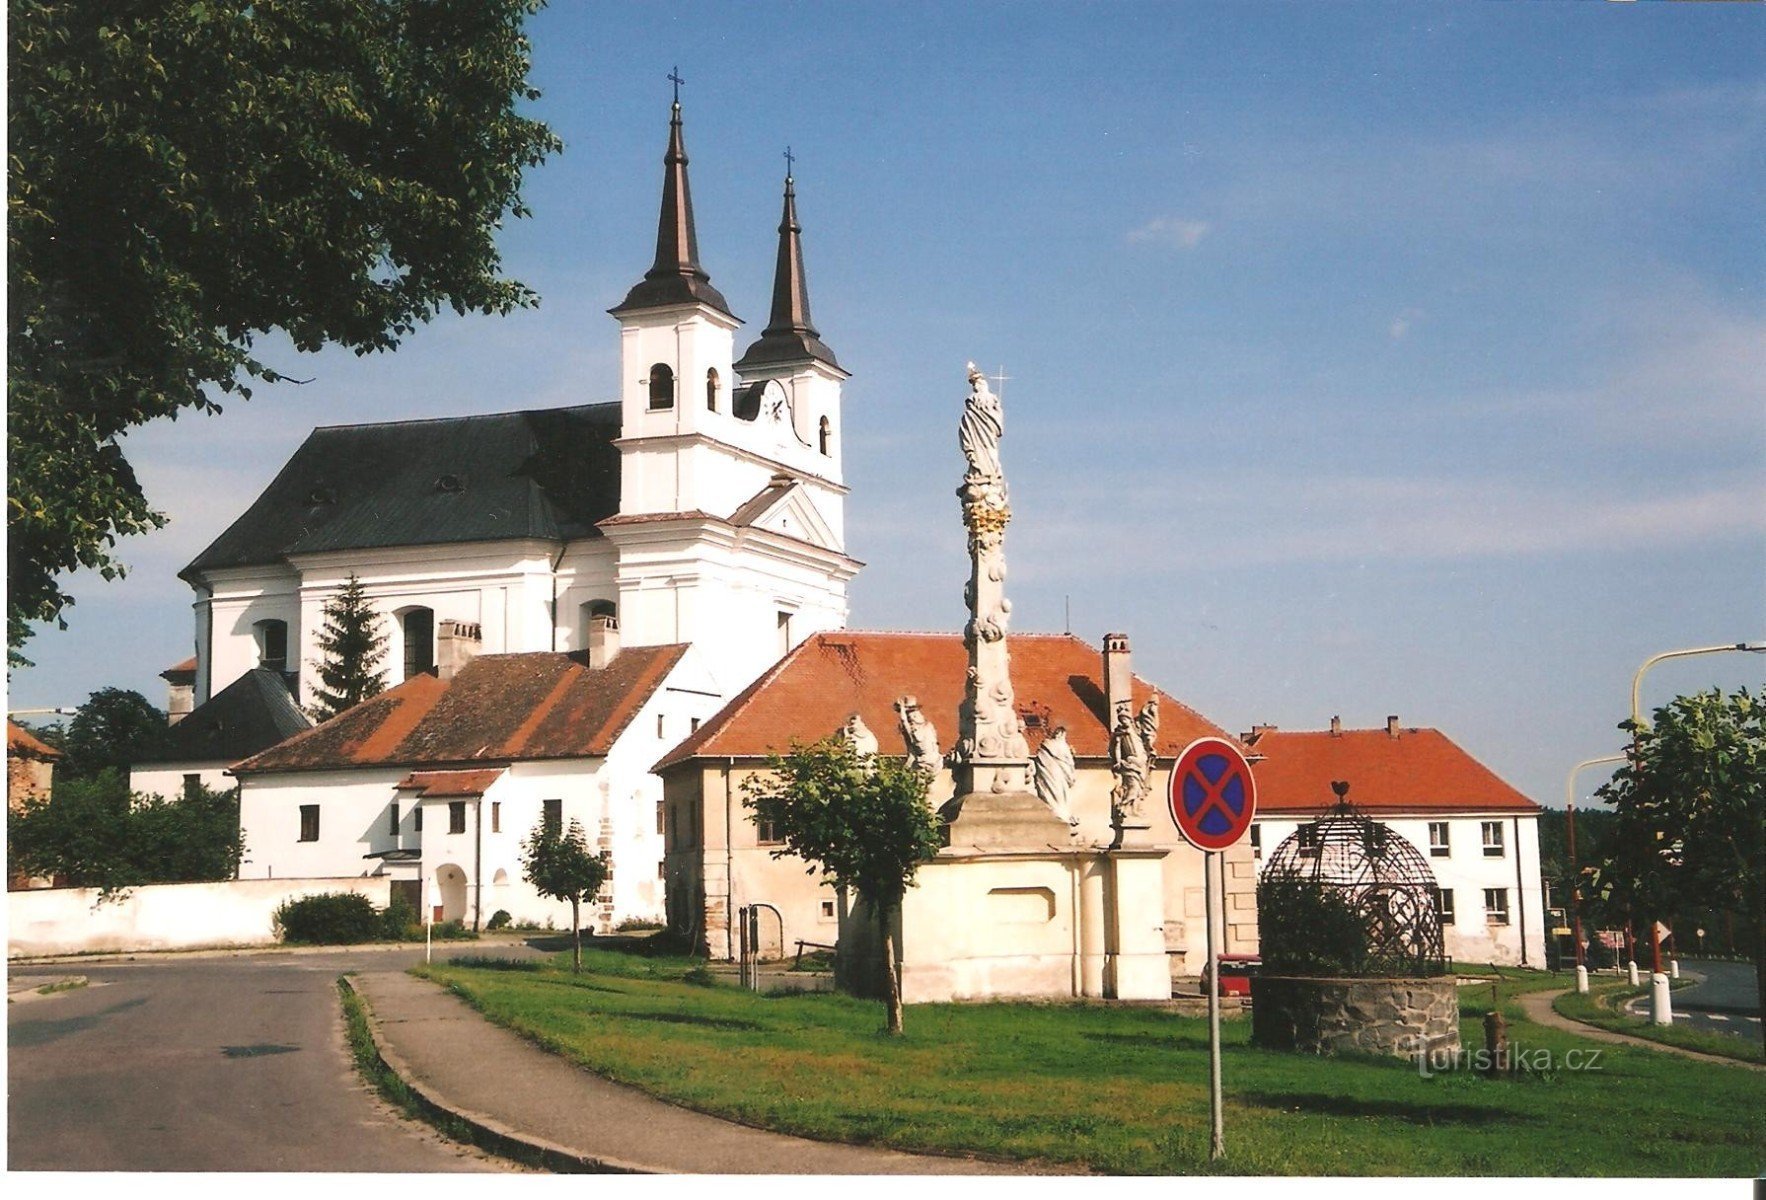 Drnholec - parte histórica do município